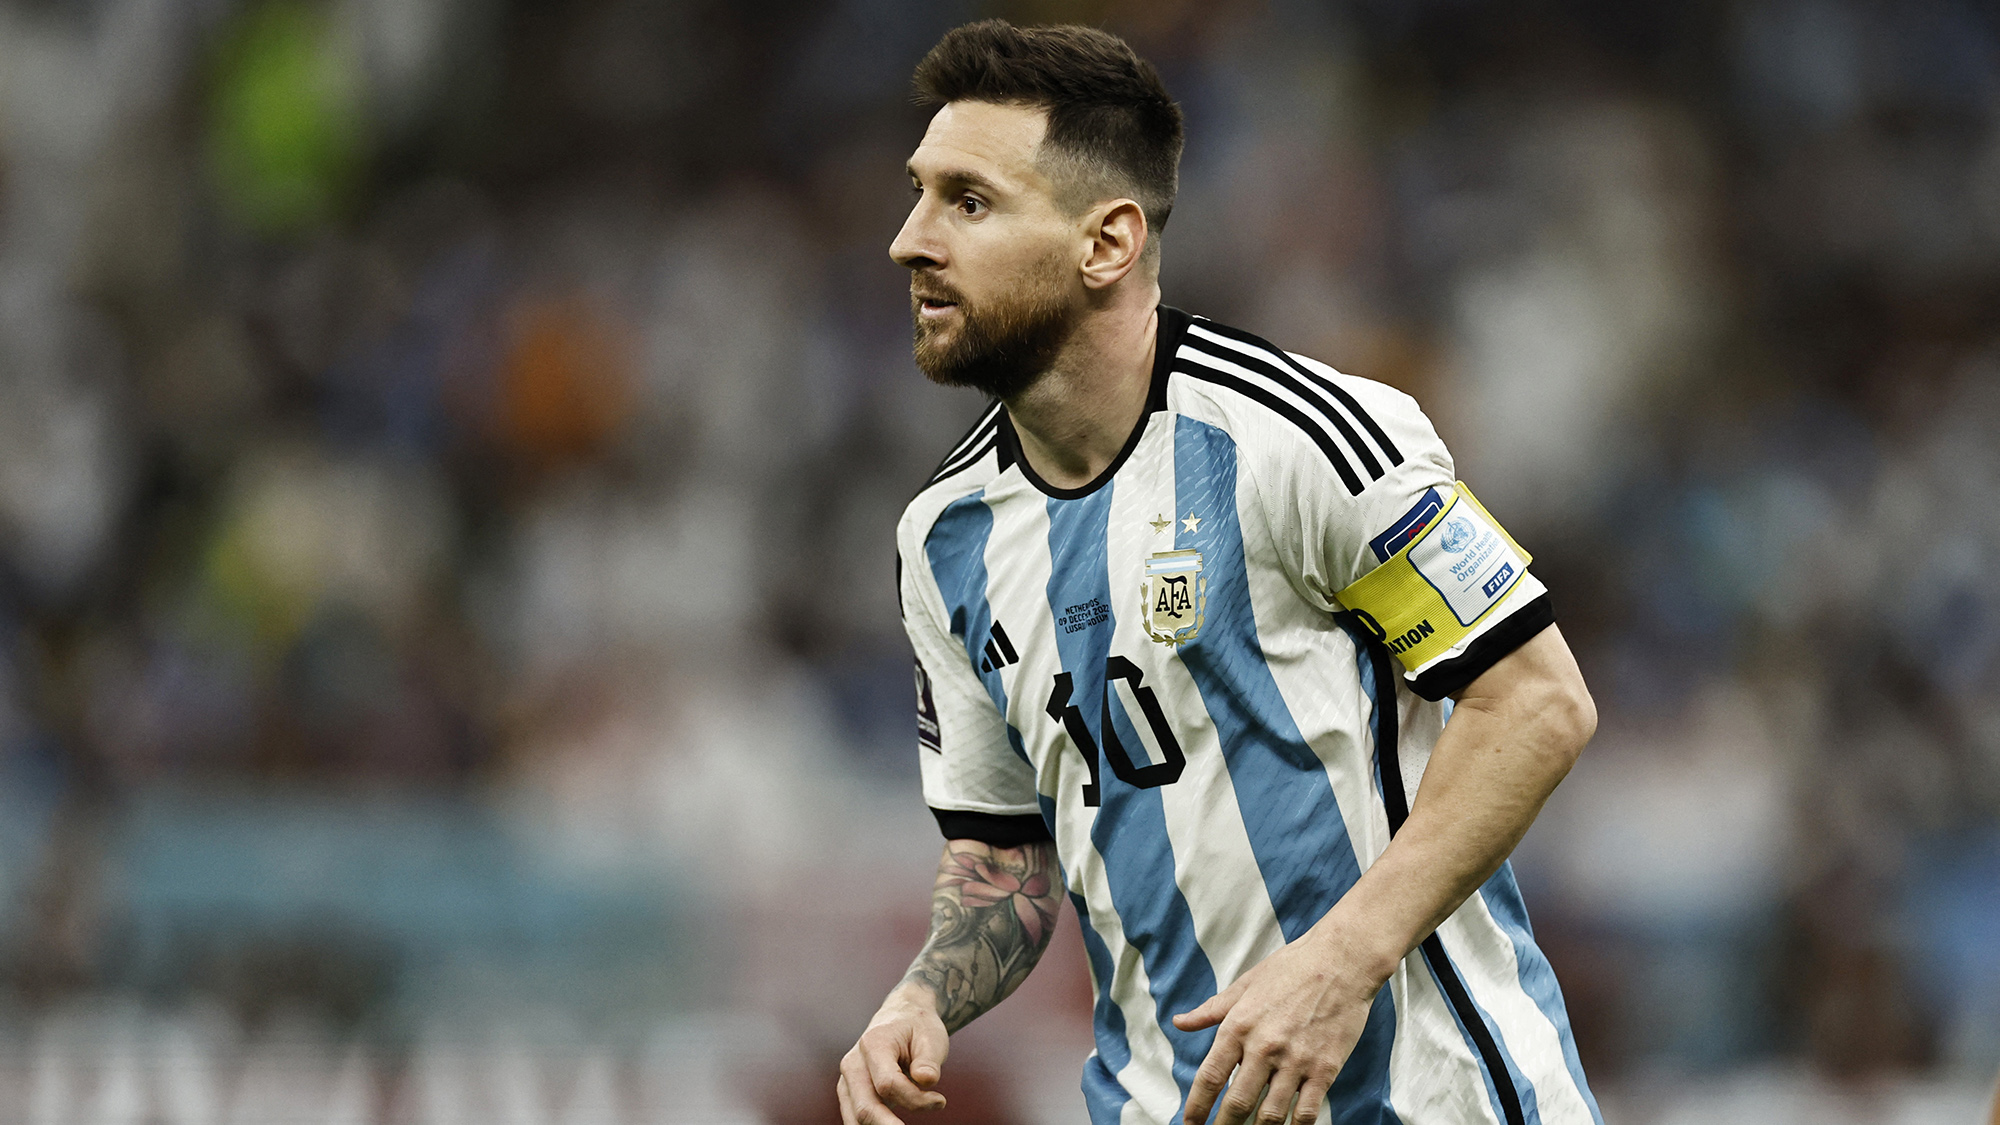 Mundial Qatar 2022: la camiseta de Messi rompió un record y está todo el mundo